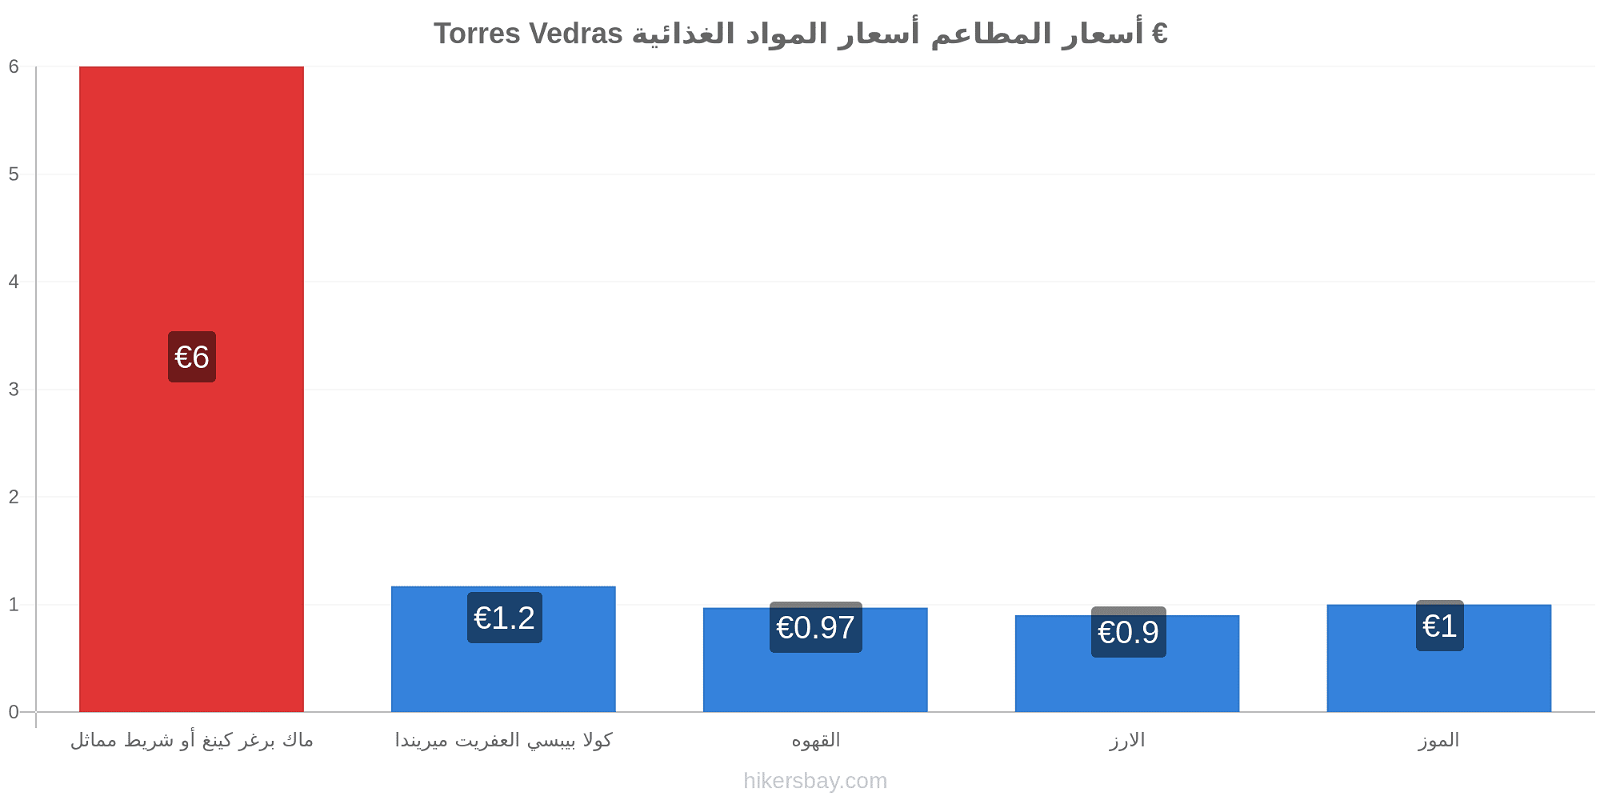 Torres Vedras تغييرات الأسعار hikersbay.com